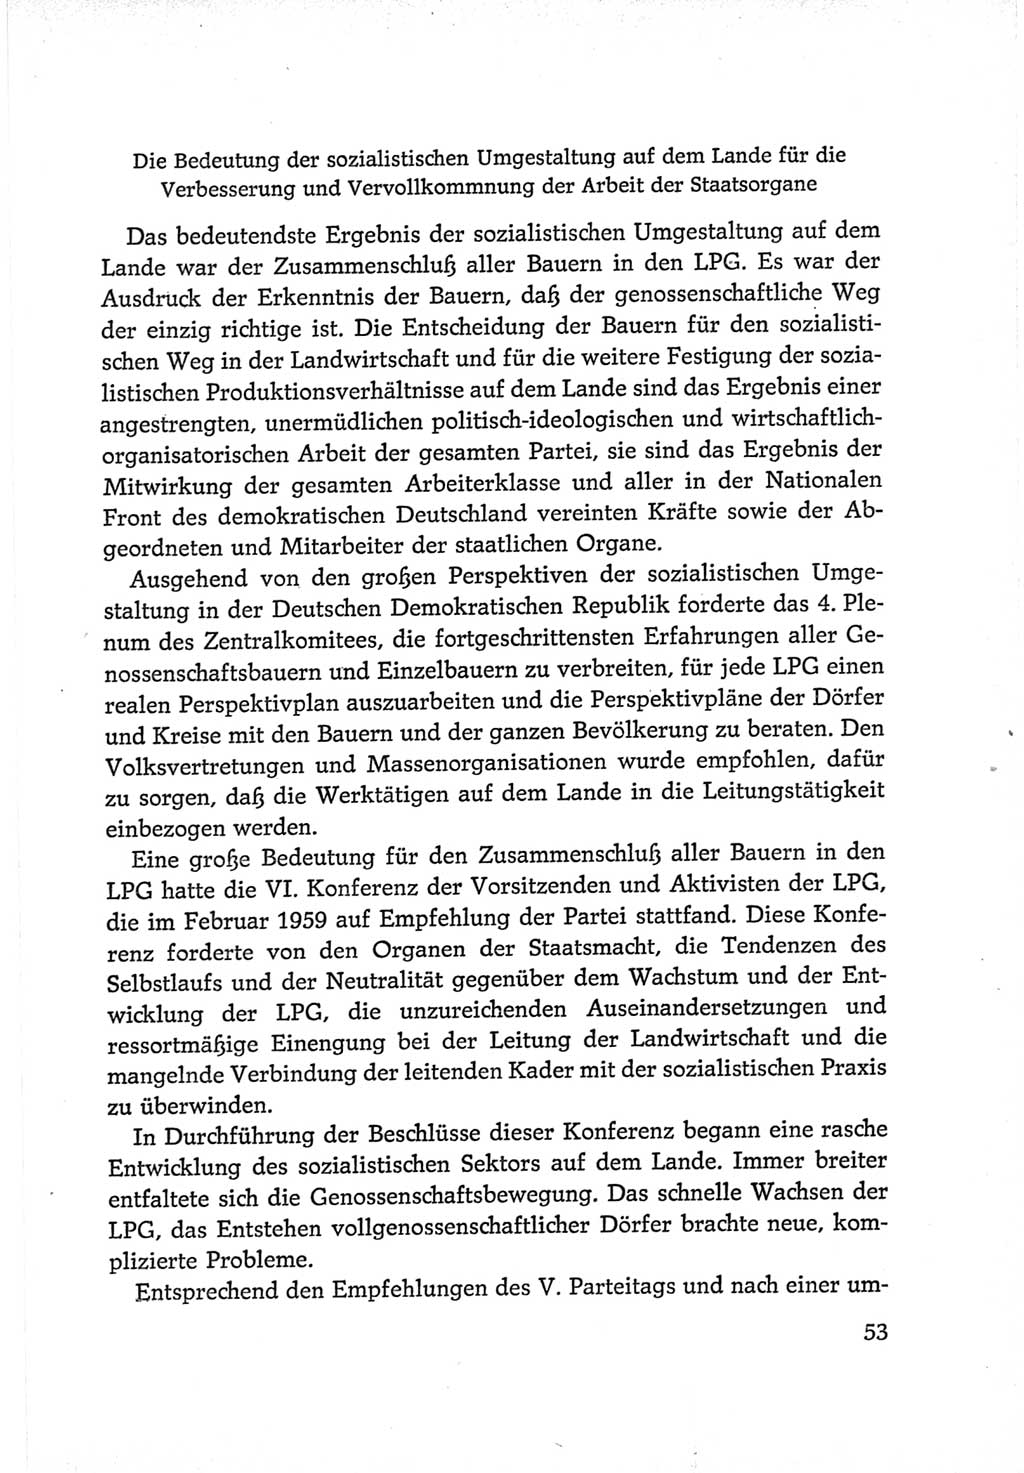 Protokoll der Verhandlungen des Ⅵ. Parteitages der Sozialistischen Einheitspartei Deutschlands (SED) [Deutsche Demokratische Republik (DDR)] 1963, Band Ⅳ, Seite 53 (Prot. Verh. Ⅵ. PT SED DDR 1963, Bd. Ⅳ, S. 53)